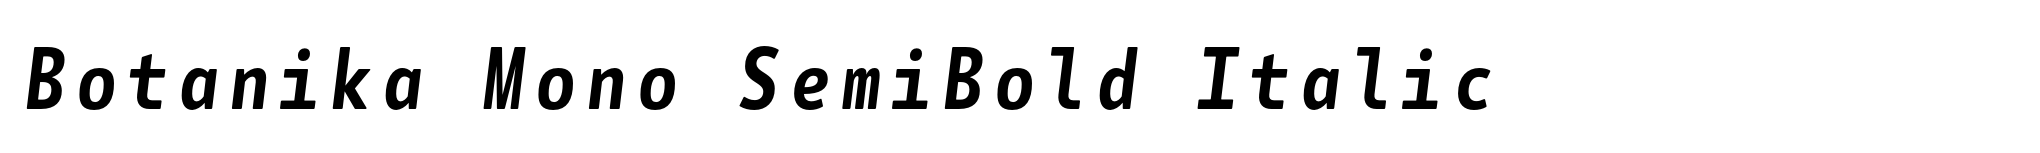 Botanika Mono SemiBold Italic image